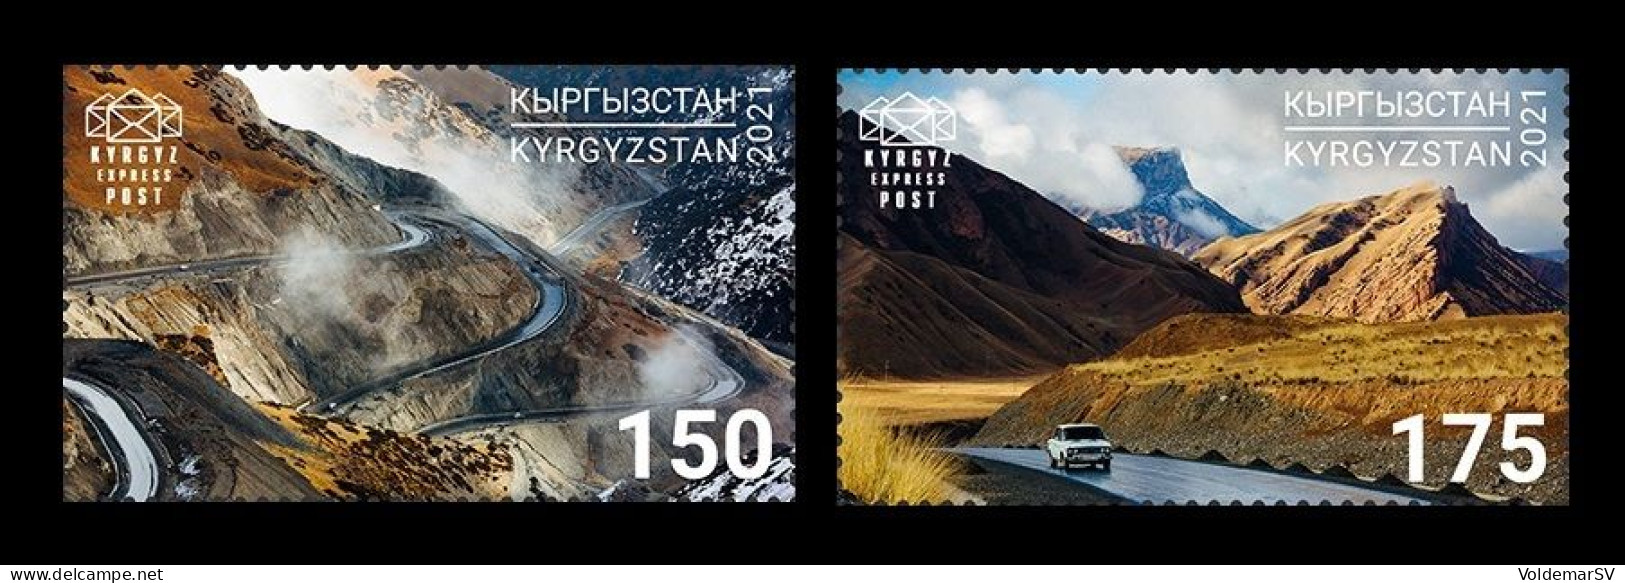 Kyrgyzstan (KEP) 2021 Mih. 181/82 Pamir Highway. Automobiles. Mountains MNH ** - Kirgisistan